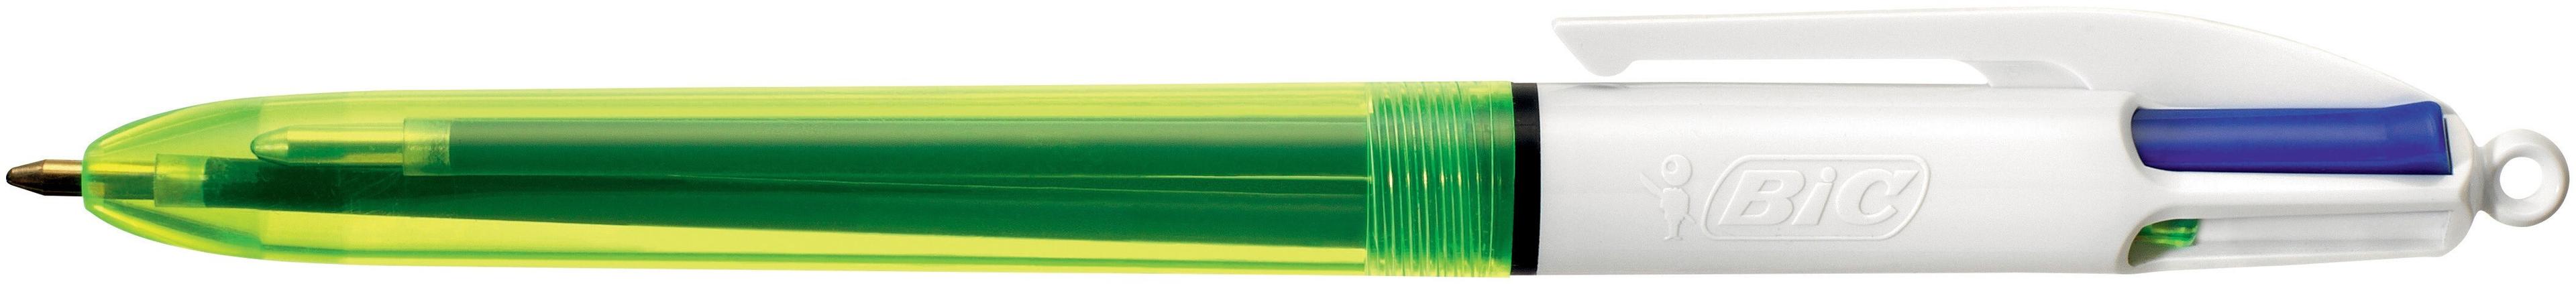 BIC Kugelschreiber 4 Colours FLUO 0.4/0.6mm